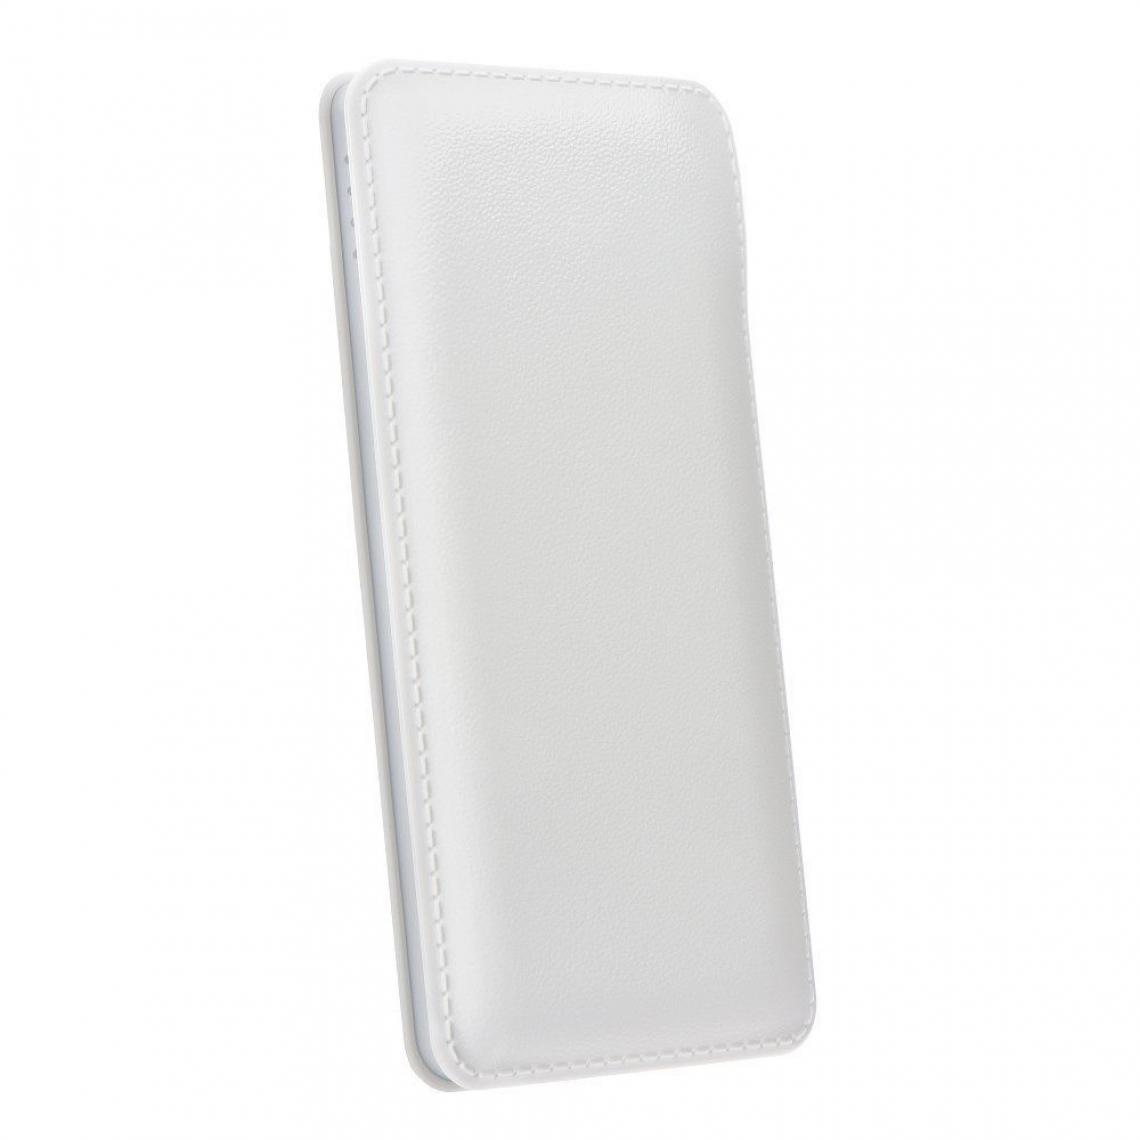 Ozzzo - Chargeur batterie externe 30000 mAh powerbank ozzzo blanc pour LG Q9 - Autres accessoires smartphone